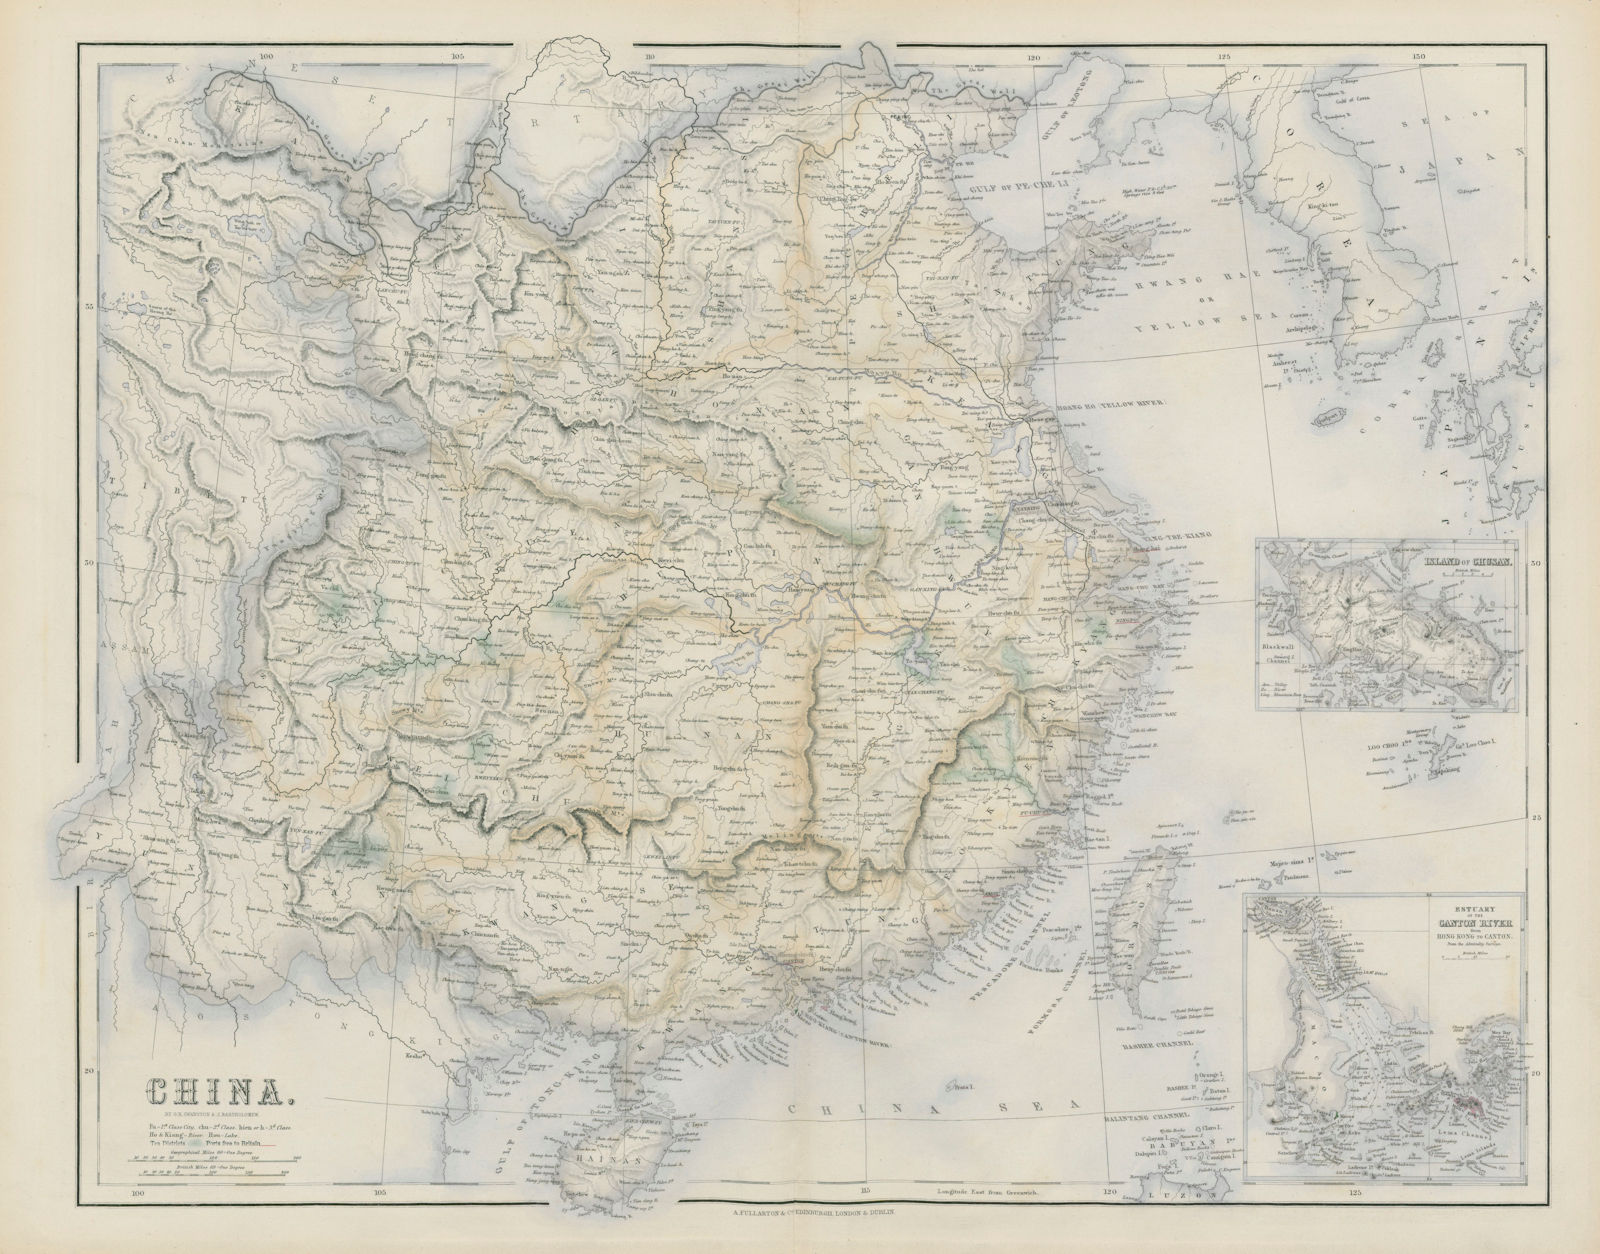 China. Inset Pearl River delta, Hong Kong, Canton Guangzhou. SWANSTON 1860 map